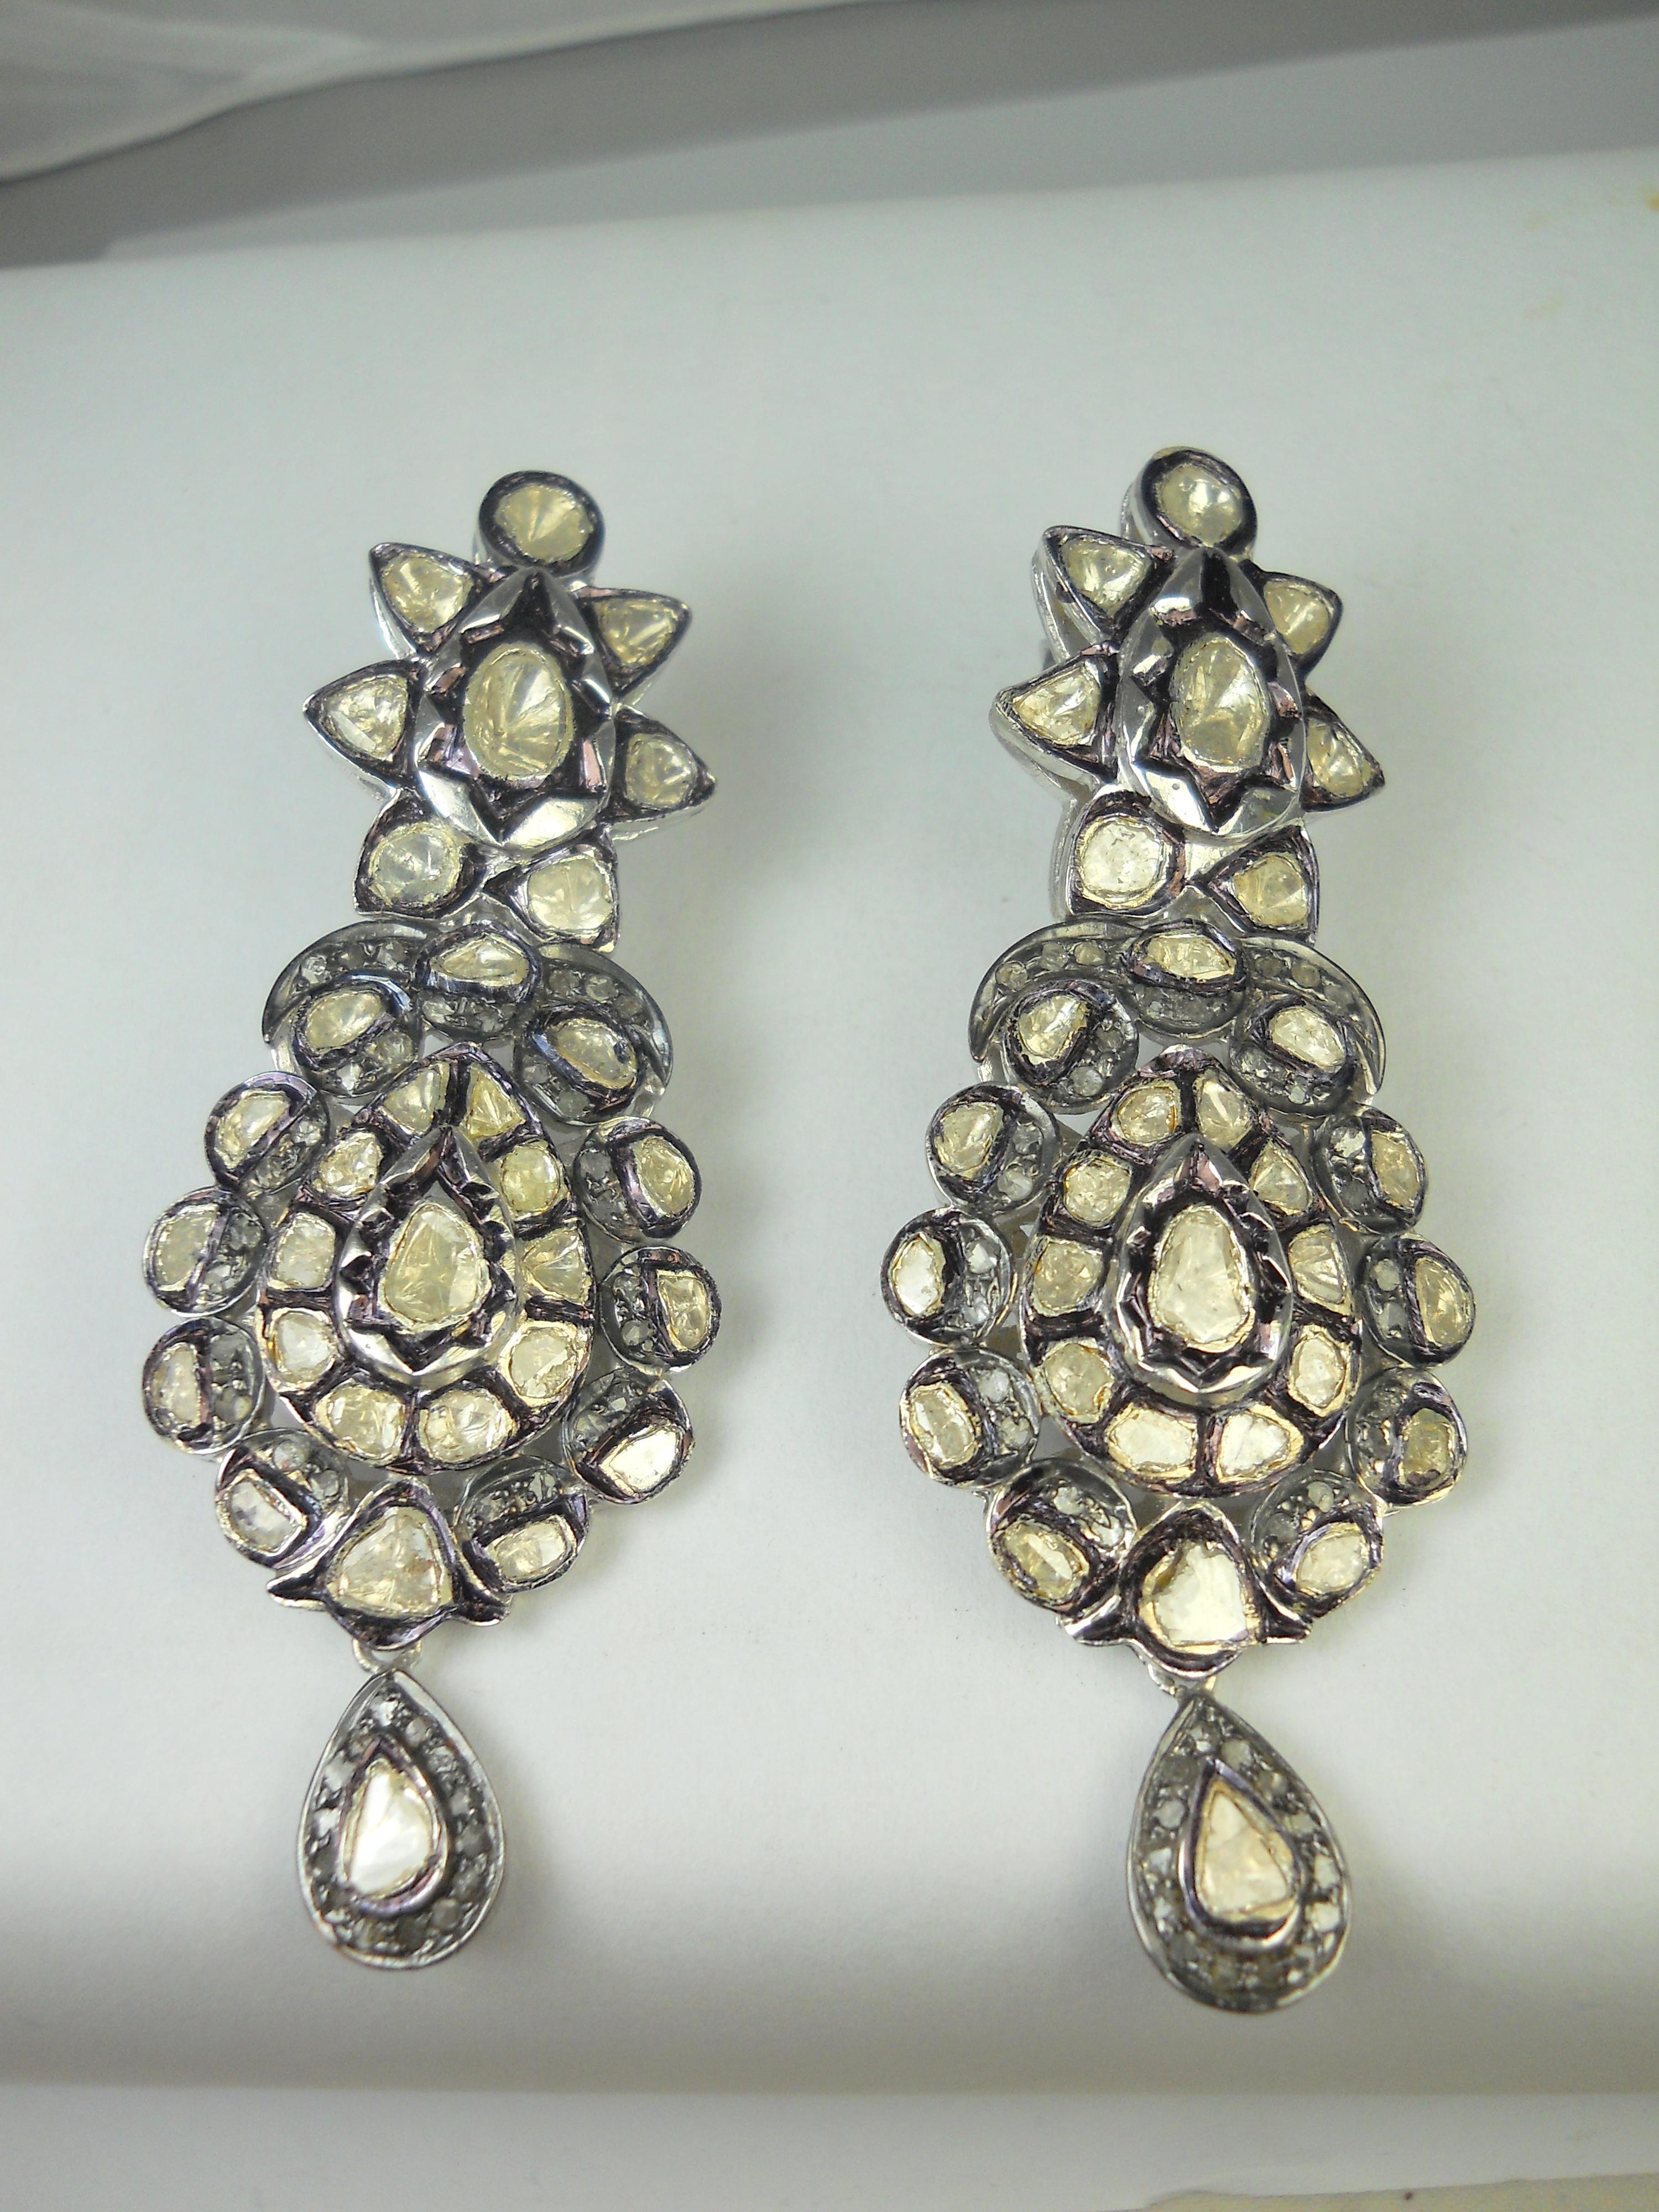 Die wunderschönen eleganten Ohrringe aus Sterlingsilber mit natürlichen Diamanten bestehen aus-

Diamanttyp- Natürliche ungeschliffene Diamanten im Rosenschliff
Farbe des Diamanten - Weiß mit einem Hauch von Braun
Gewicht der Diamanten - 16,85cts